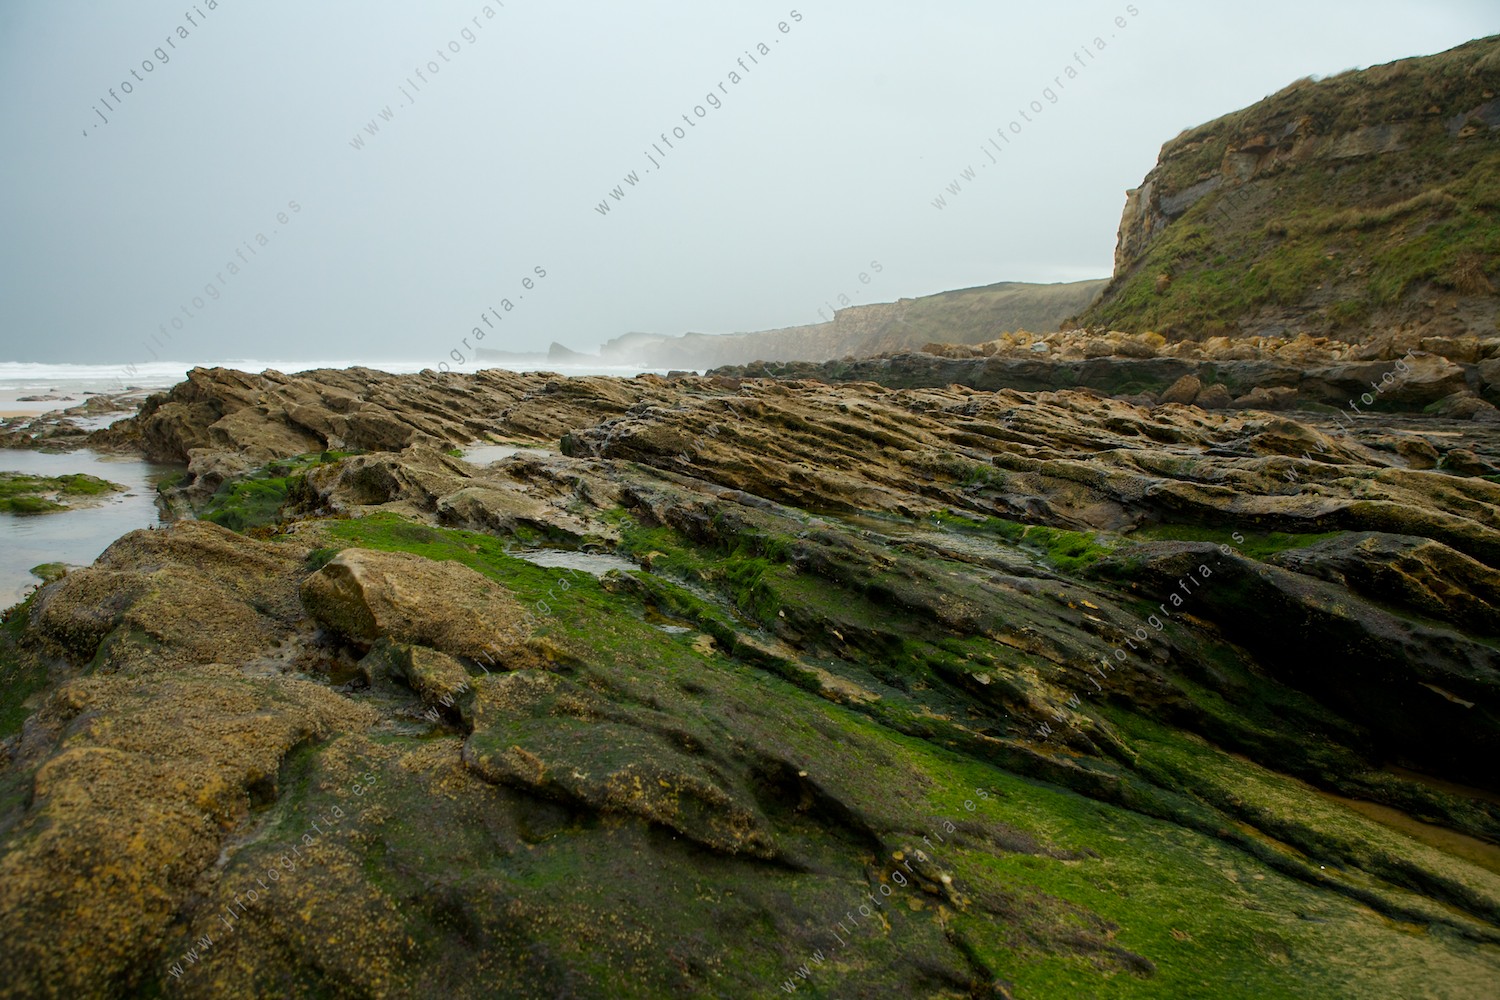 Rocas cubiertas de musgo, de la plataforma de abrasión de la costa quebrada de liencres en Cantabria